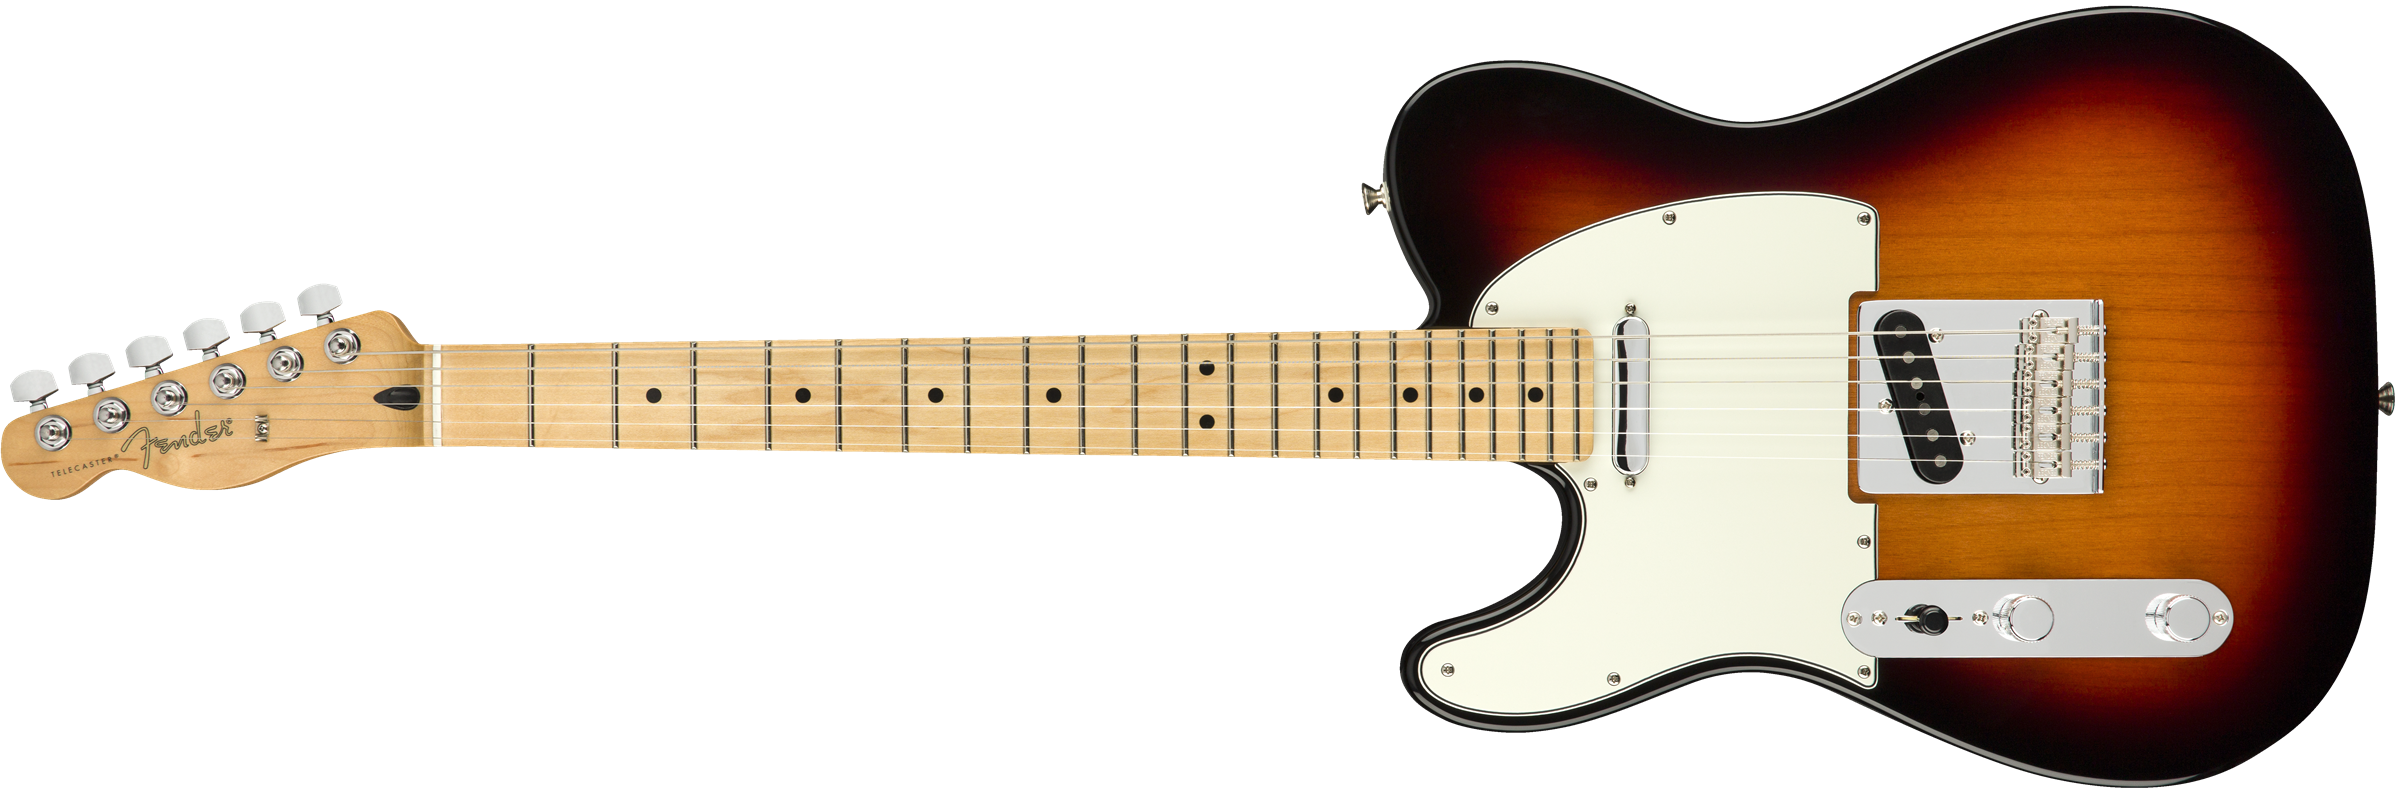 Fender Tele Player Lh Gaucher Mex Ss Mn - 3-color Sunburst - Guitarra electrica para zurdos - Variation 1